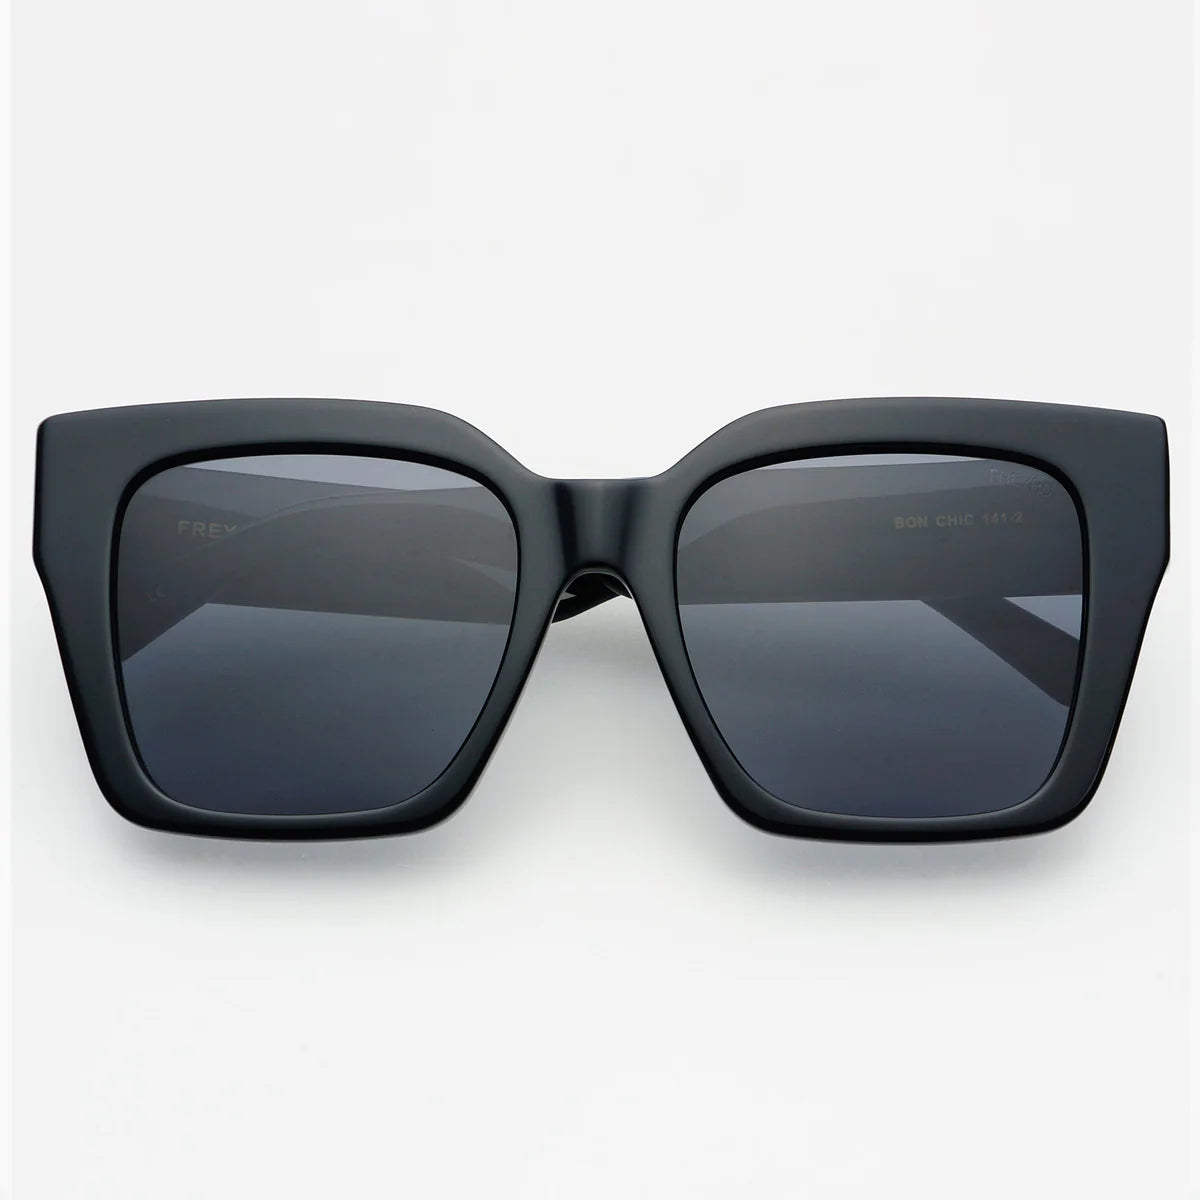 Bon Chic Sunglasses in Black